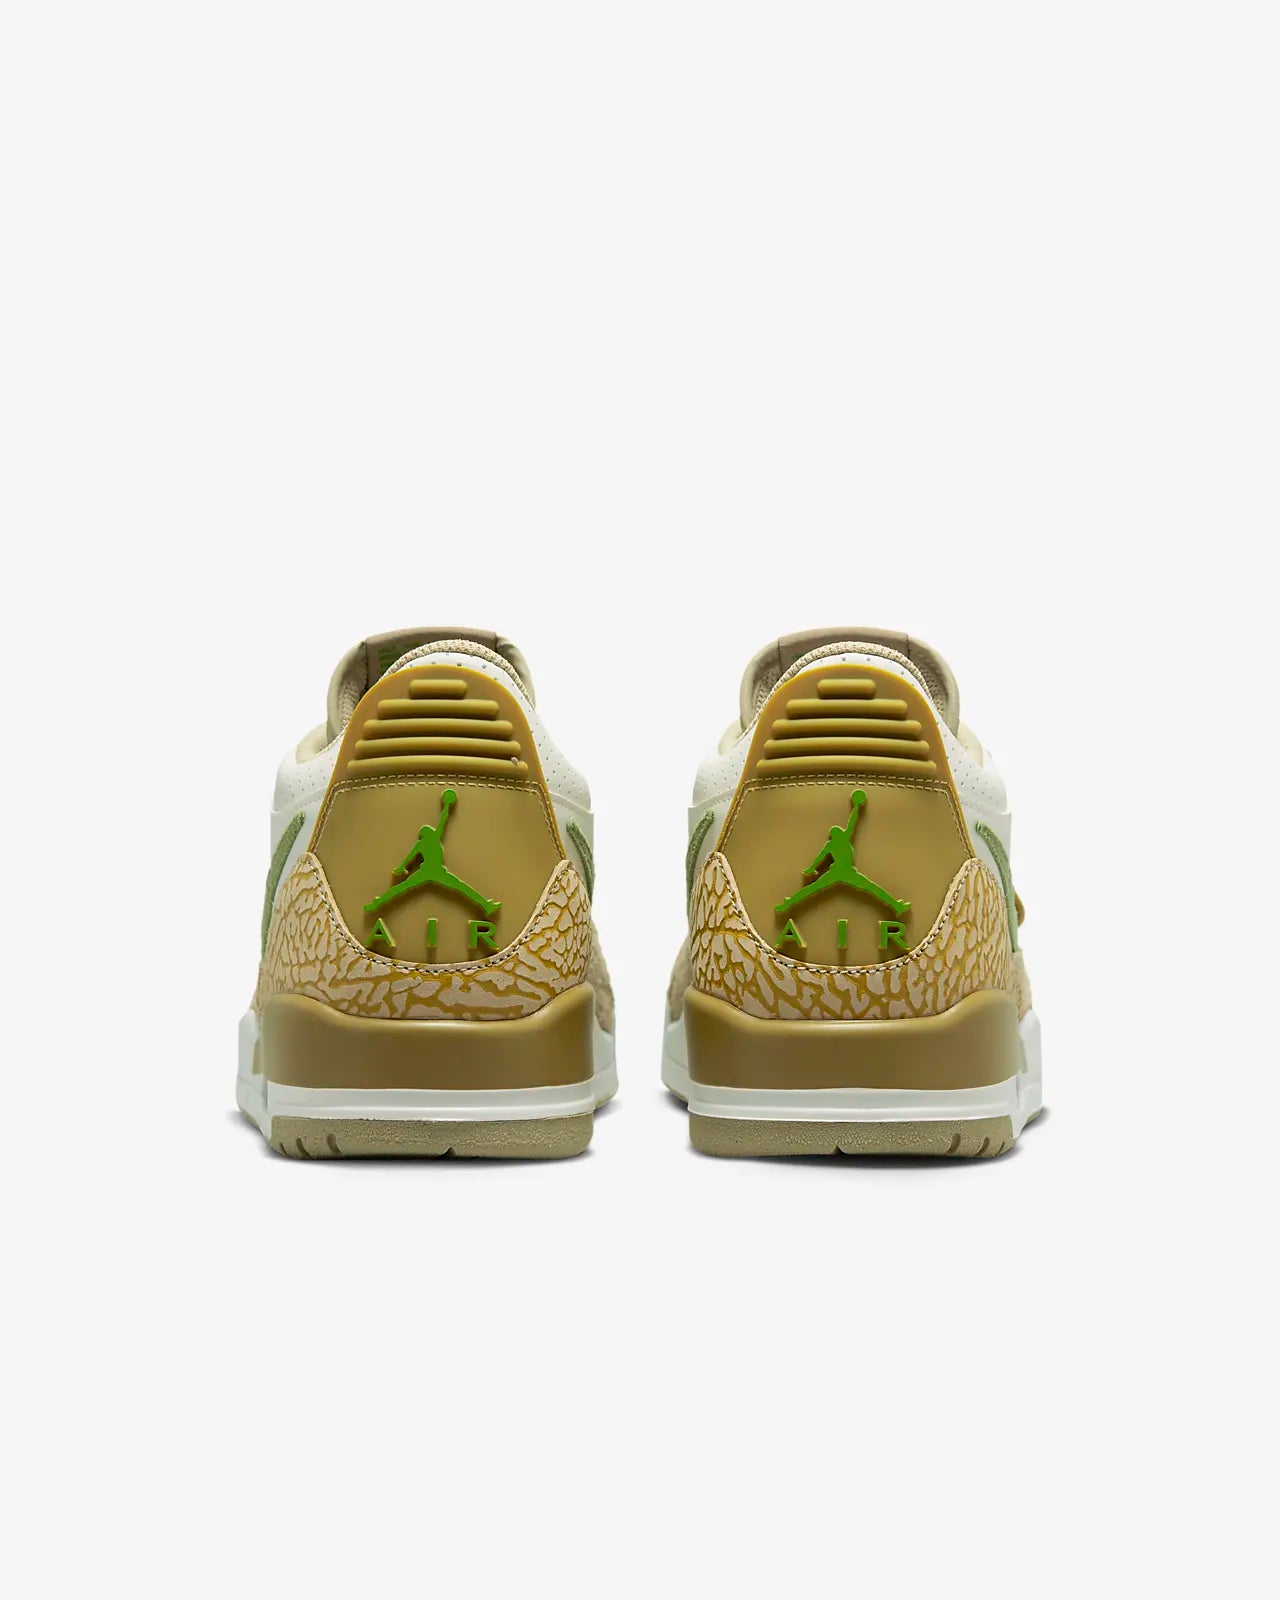 Nike - Air Jordan 312 Legacy Low - Olive Gold